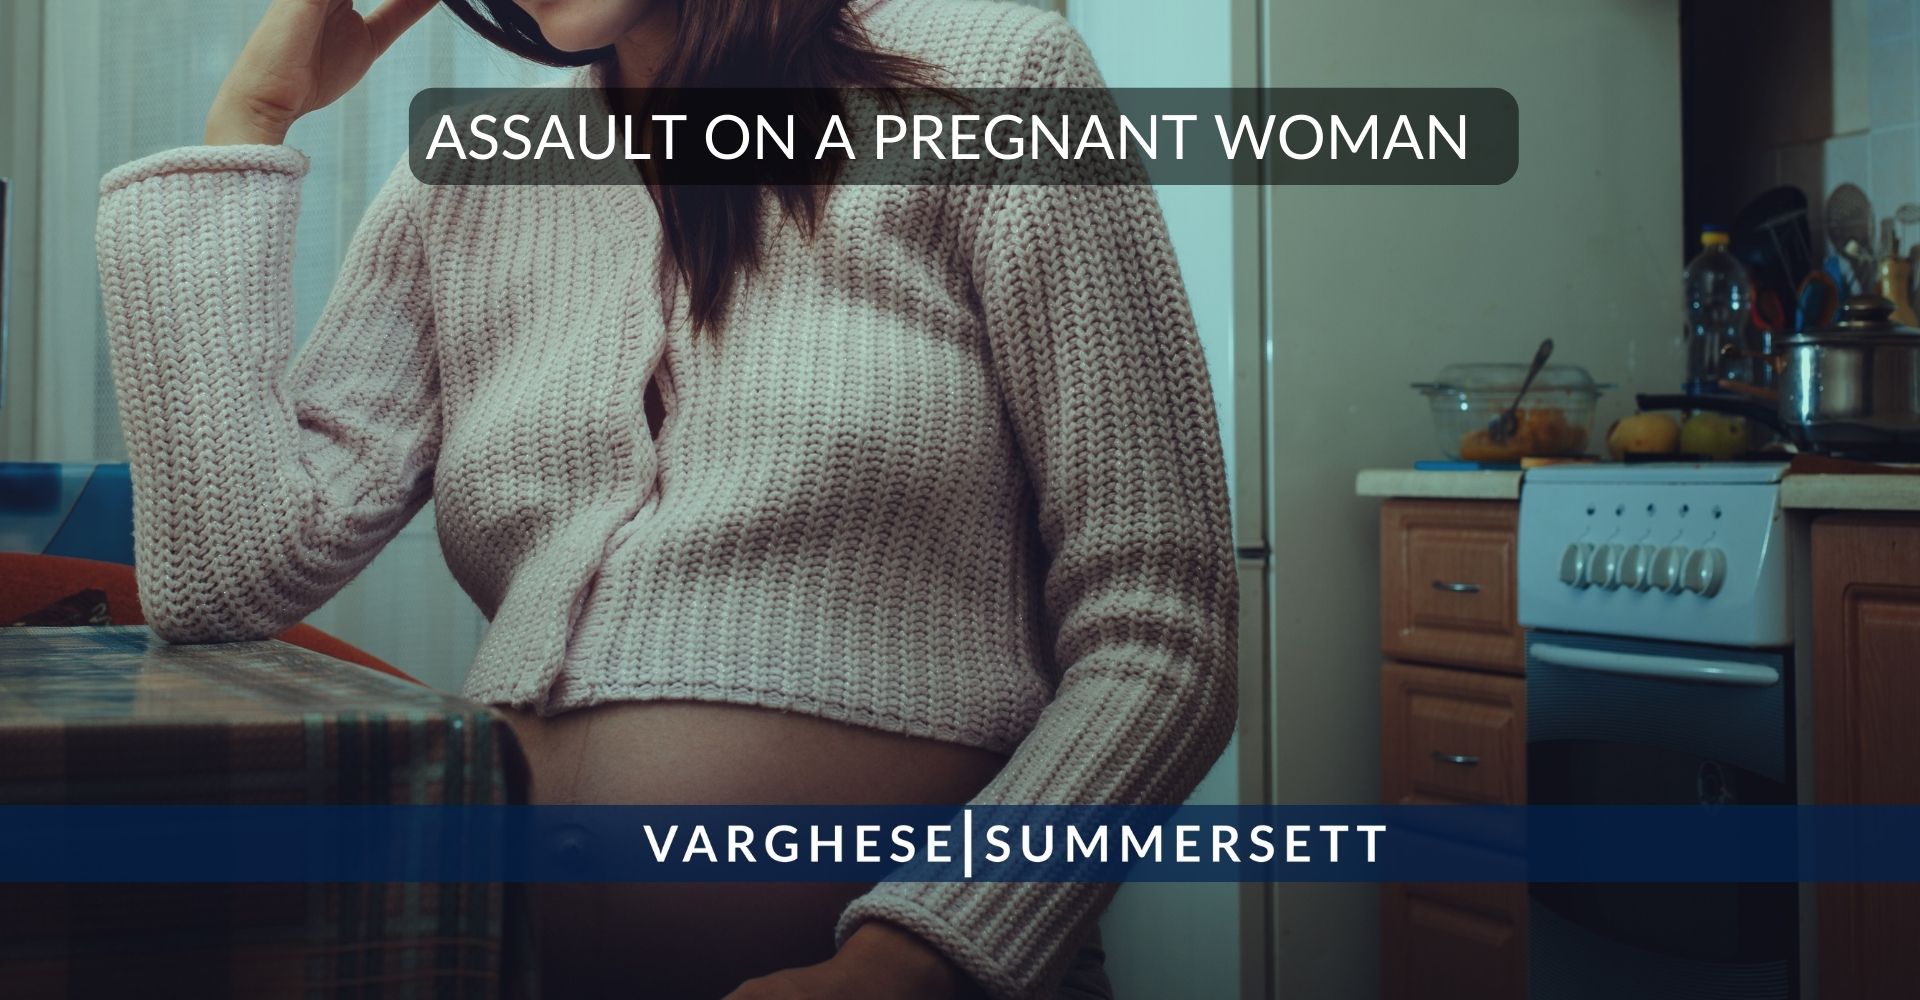 Agresión a una Mujer Embarazada en Texas | Crimen y Consecuencias